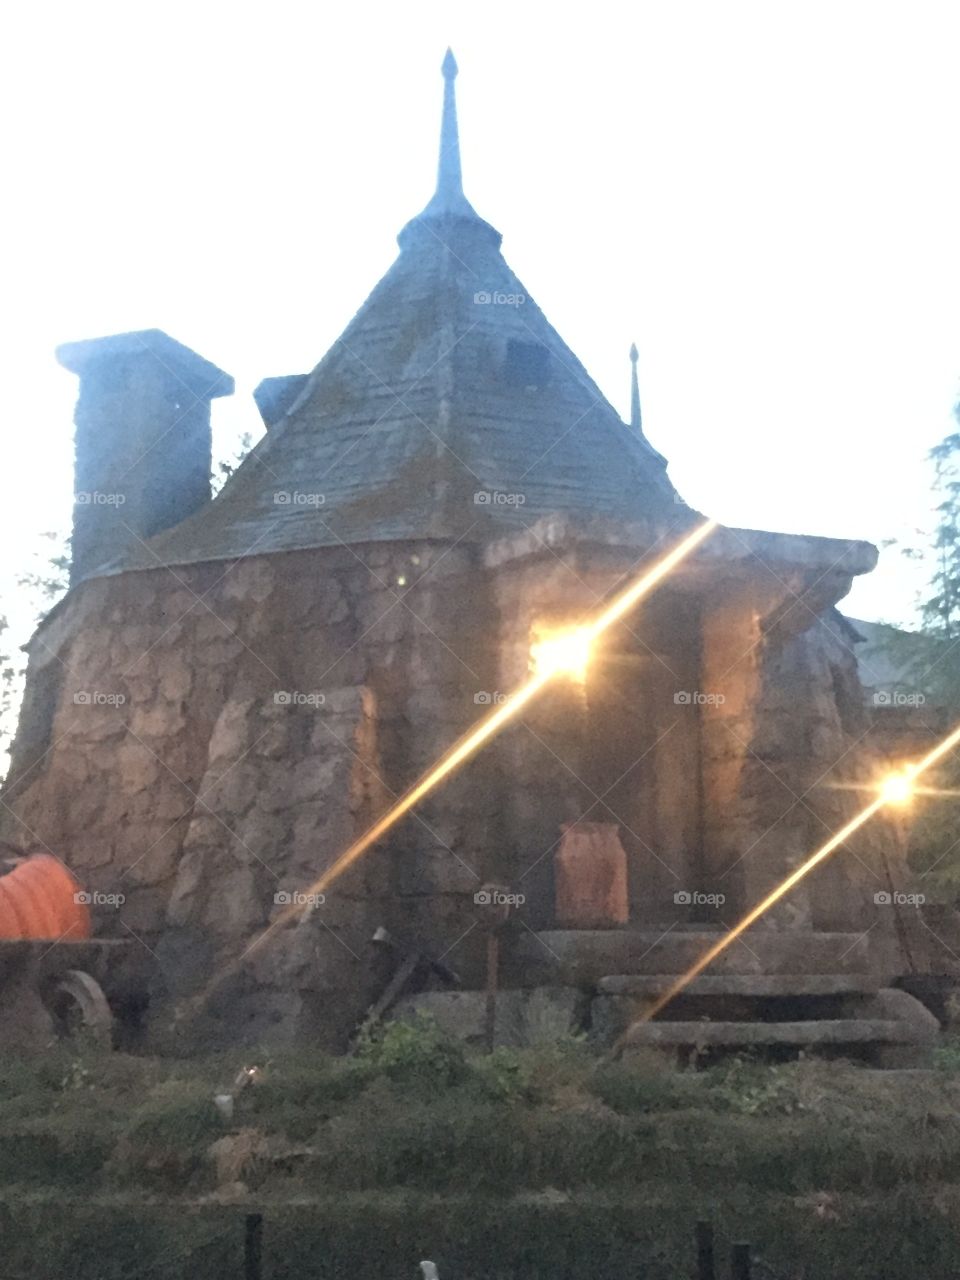 Hagrid's hut